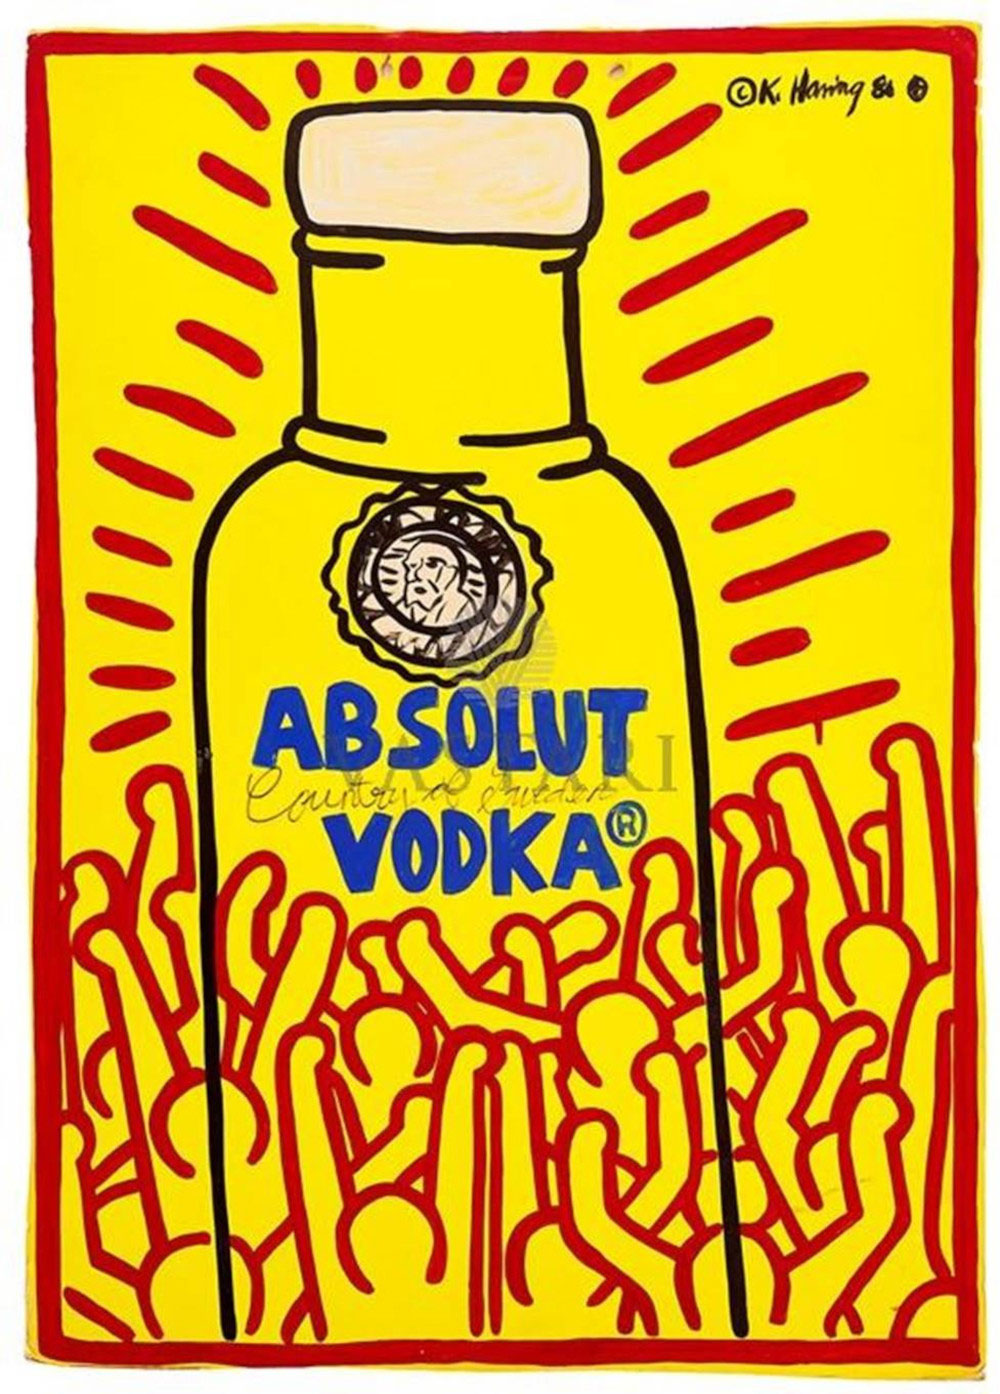 Keith Haring, Absolut vodka (1986; litografia stampata a colori, 54 x 38 cm; Amsterdam, Moco Museum) 